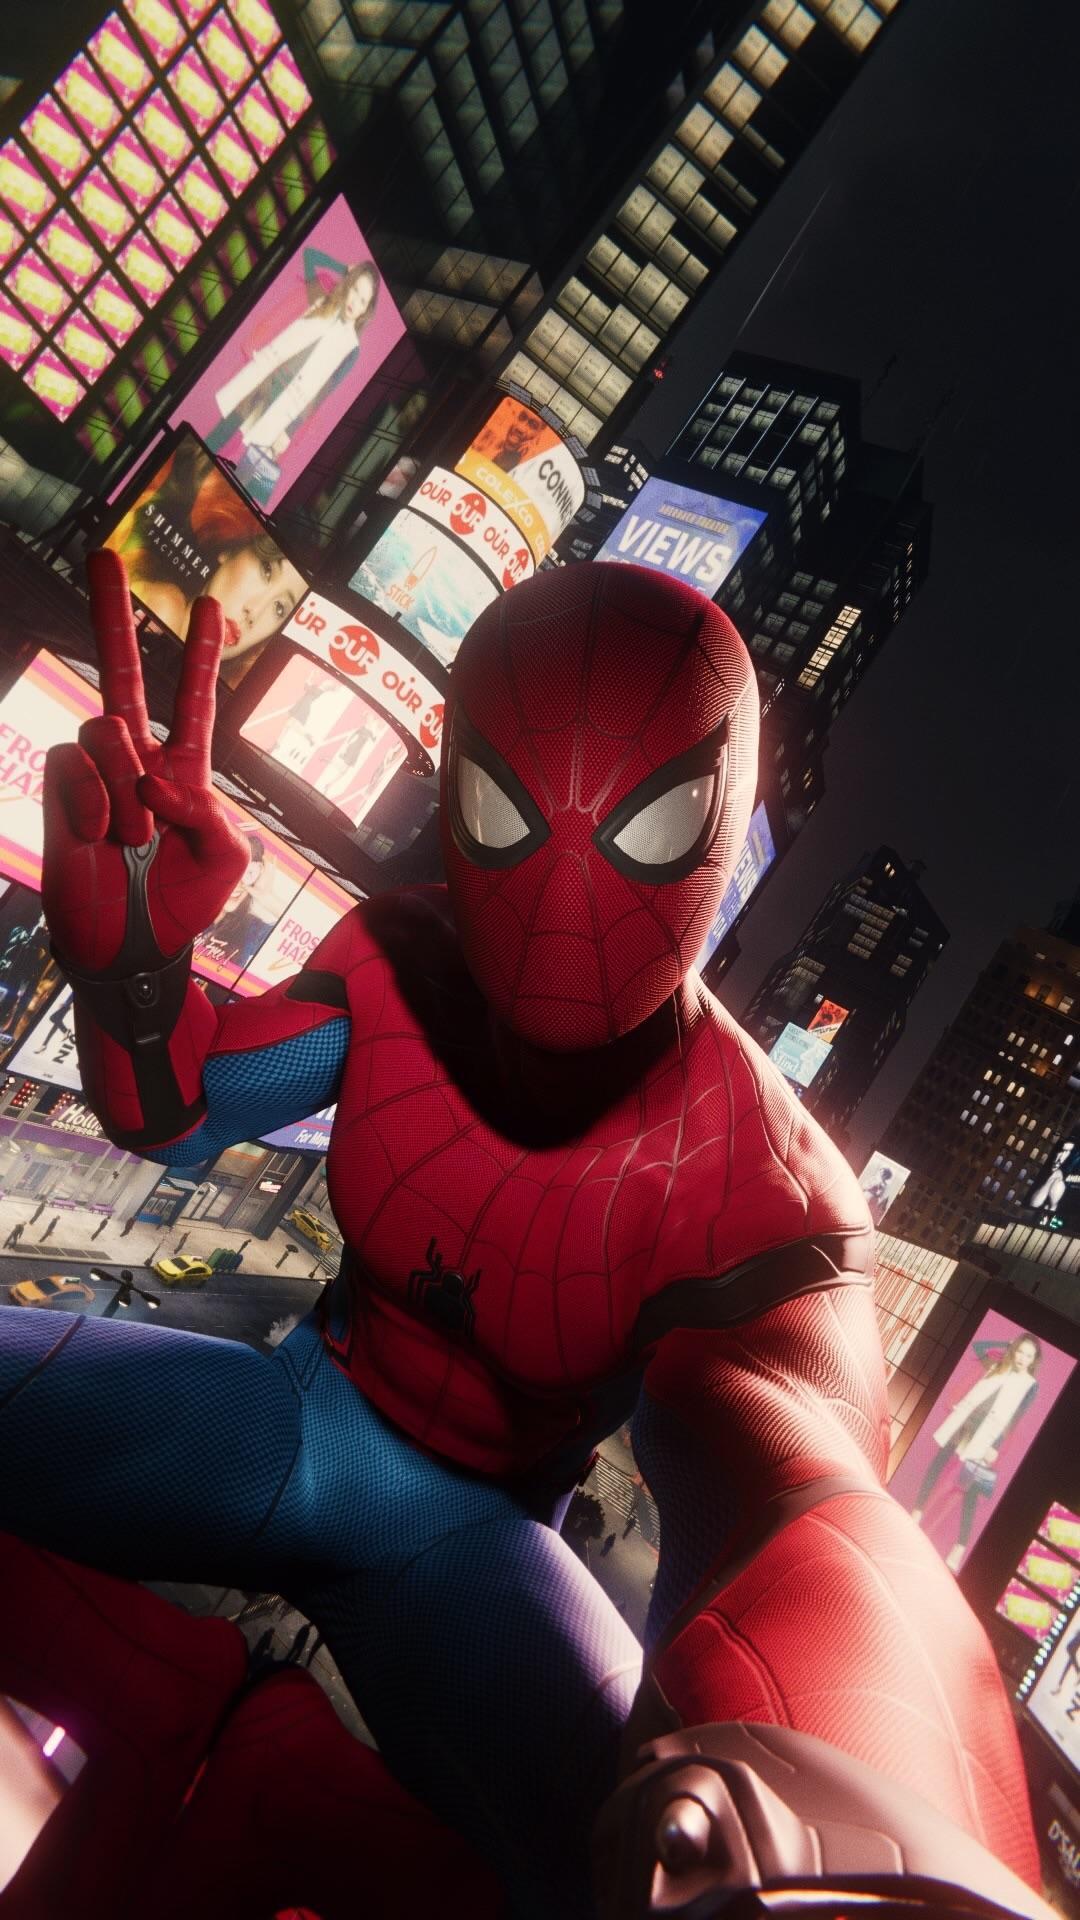 Download Gambar Wallpaper Hd Iphone Spiderman terbaru 2020